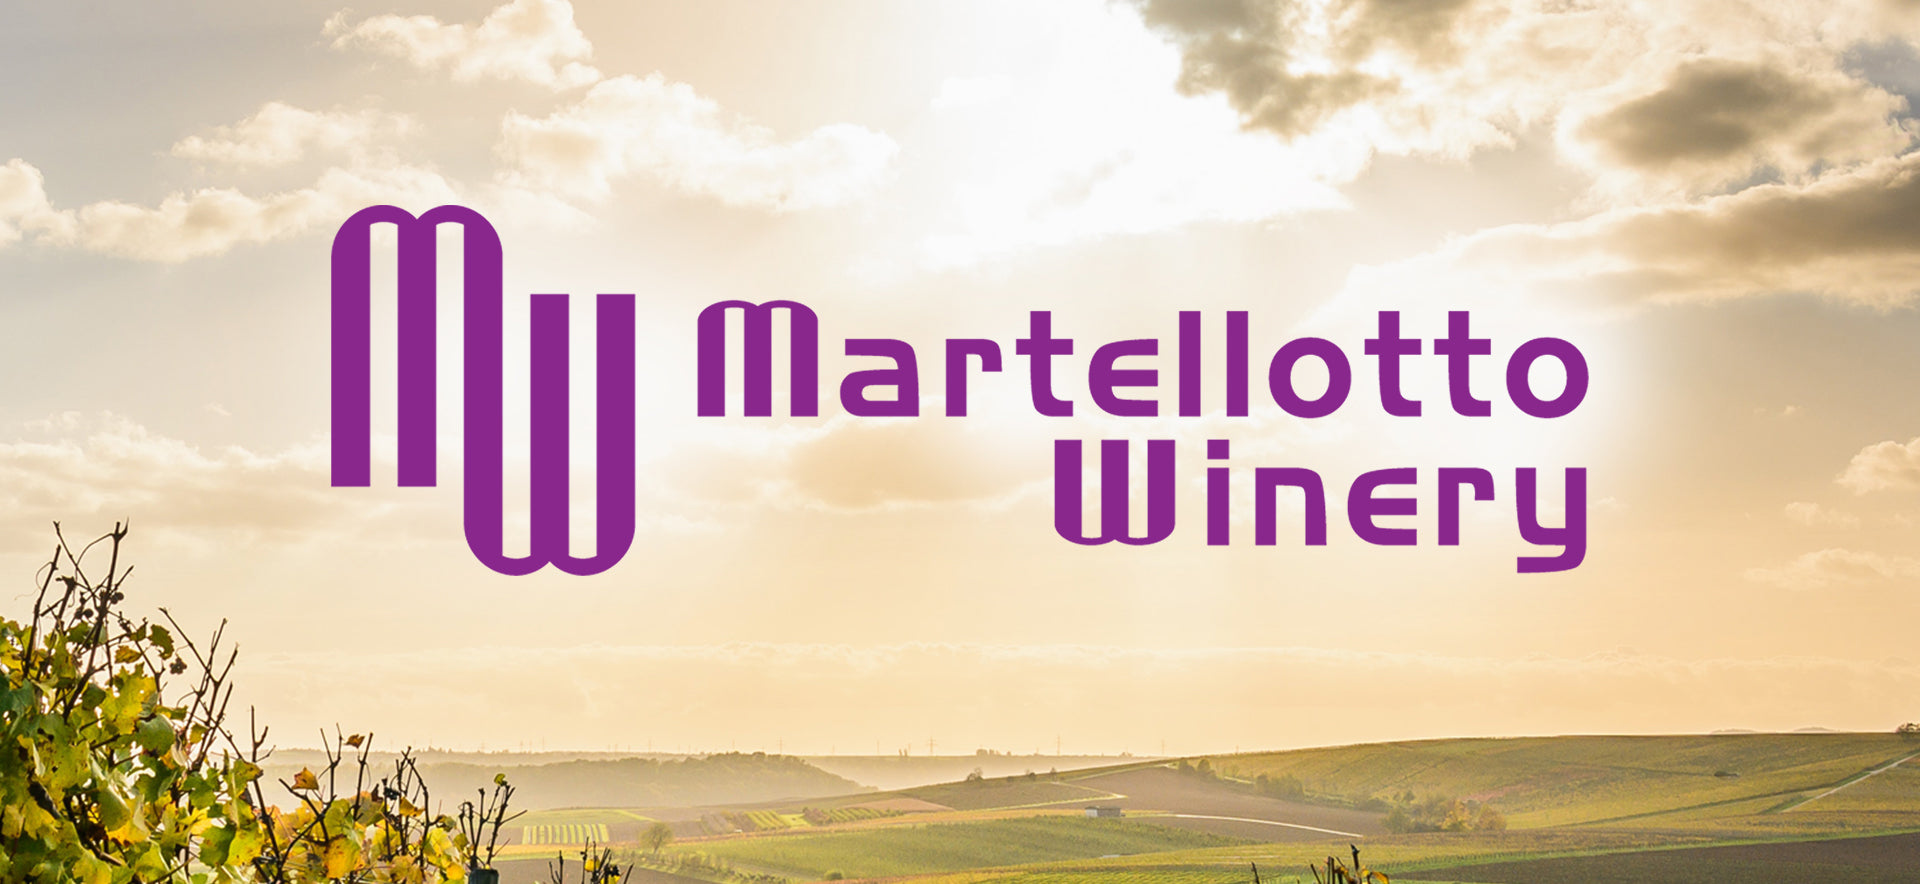 santa barbara happy canyon martellotto winery grape harvest 2019